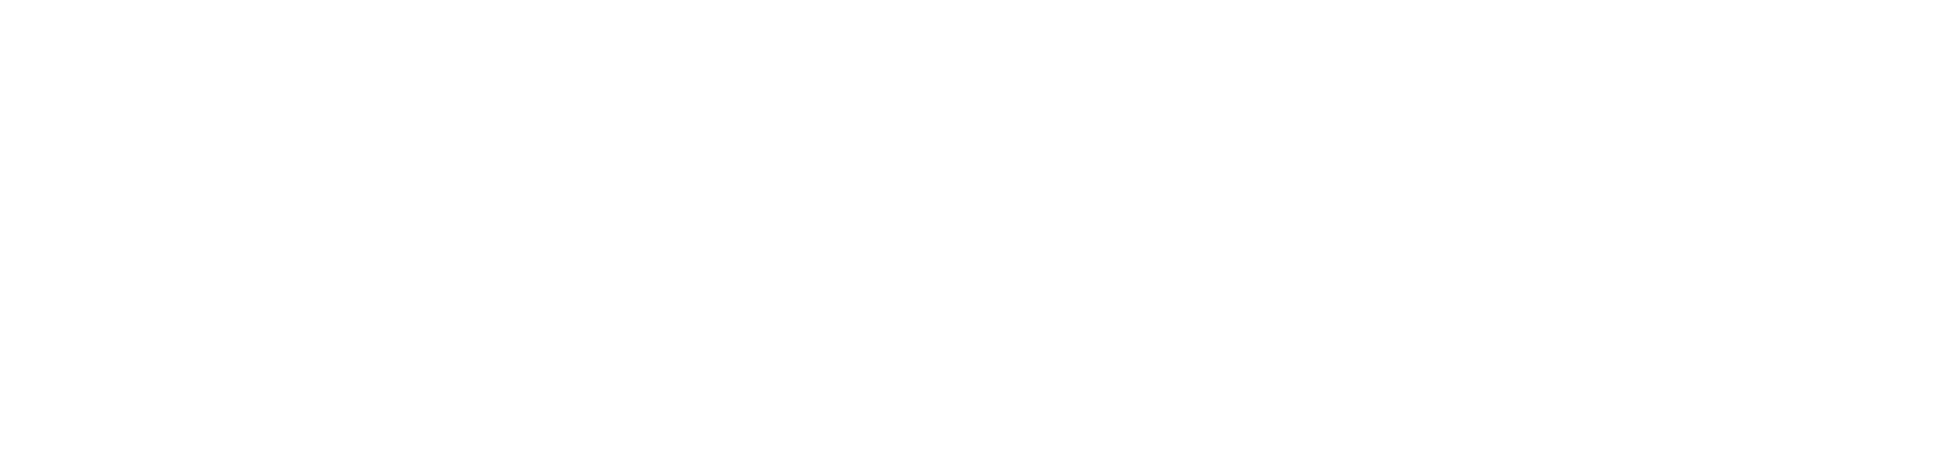 Høje Kolstrup Bydelsportal logo